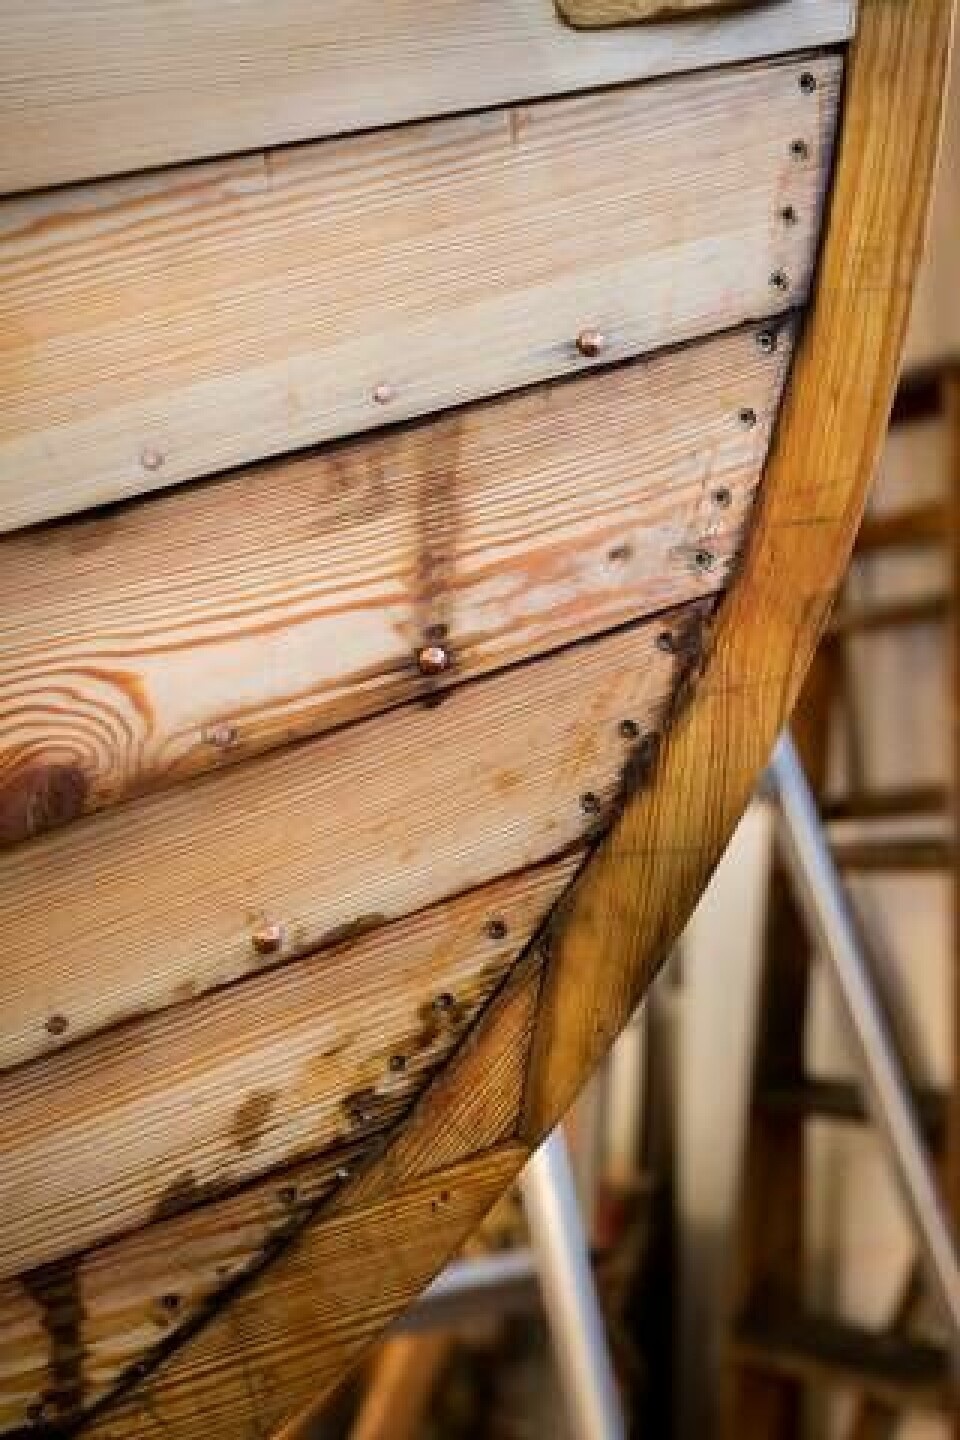 Hur klinkbåtarna fogats samman har utvecklats under historiens gång, från träplugg och rötter vidare till järn- och kopparspik. Foto: Fredrik Sederholm